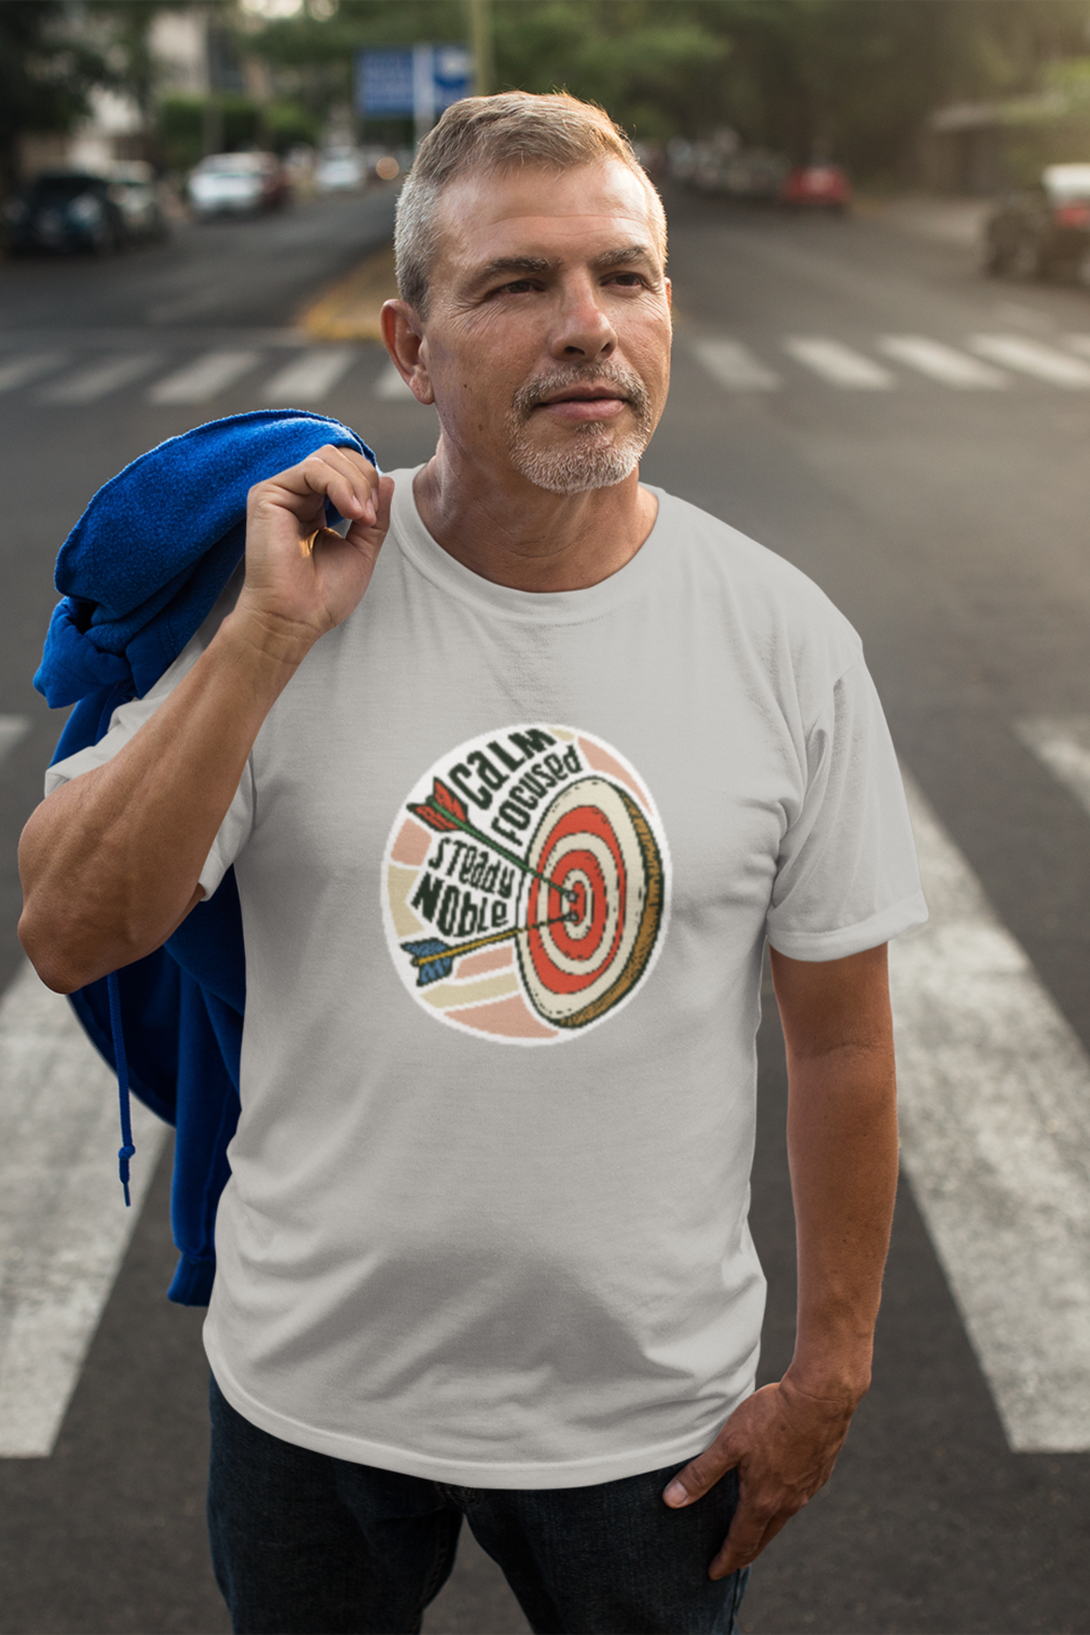 Bullseye Printed T-Shirt For Men - WowWaves - 3